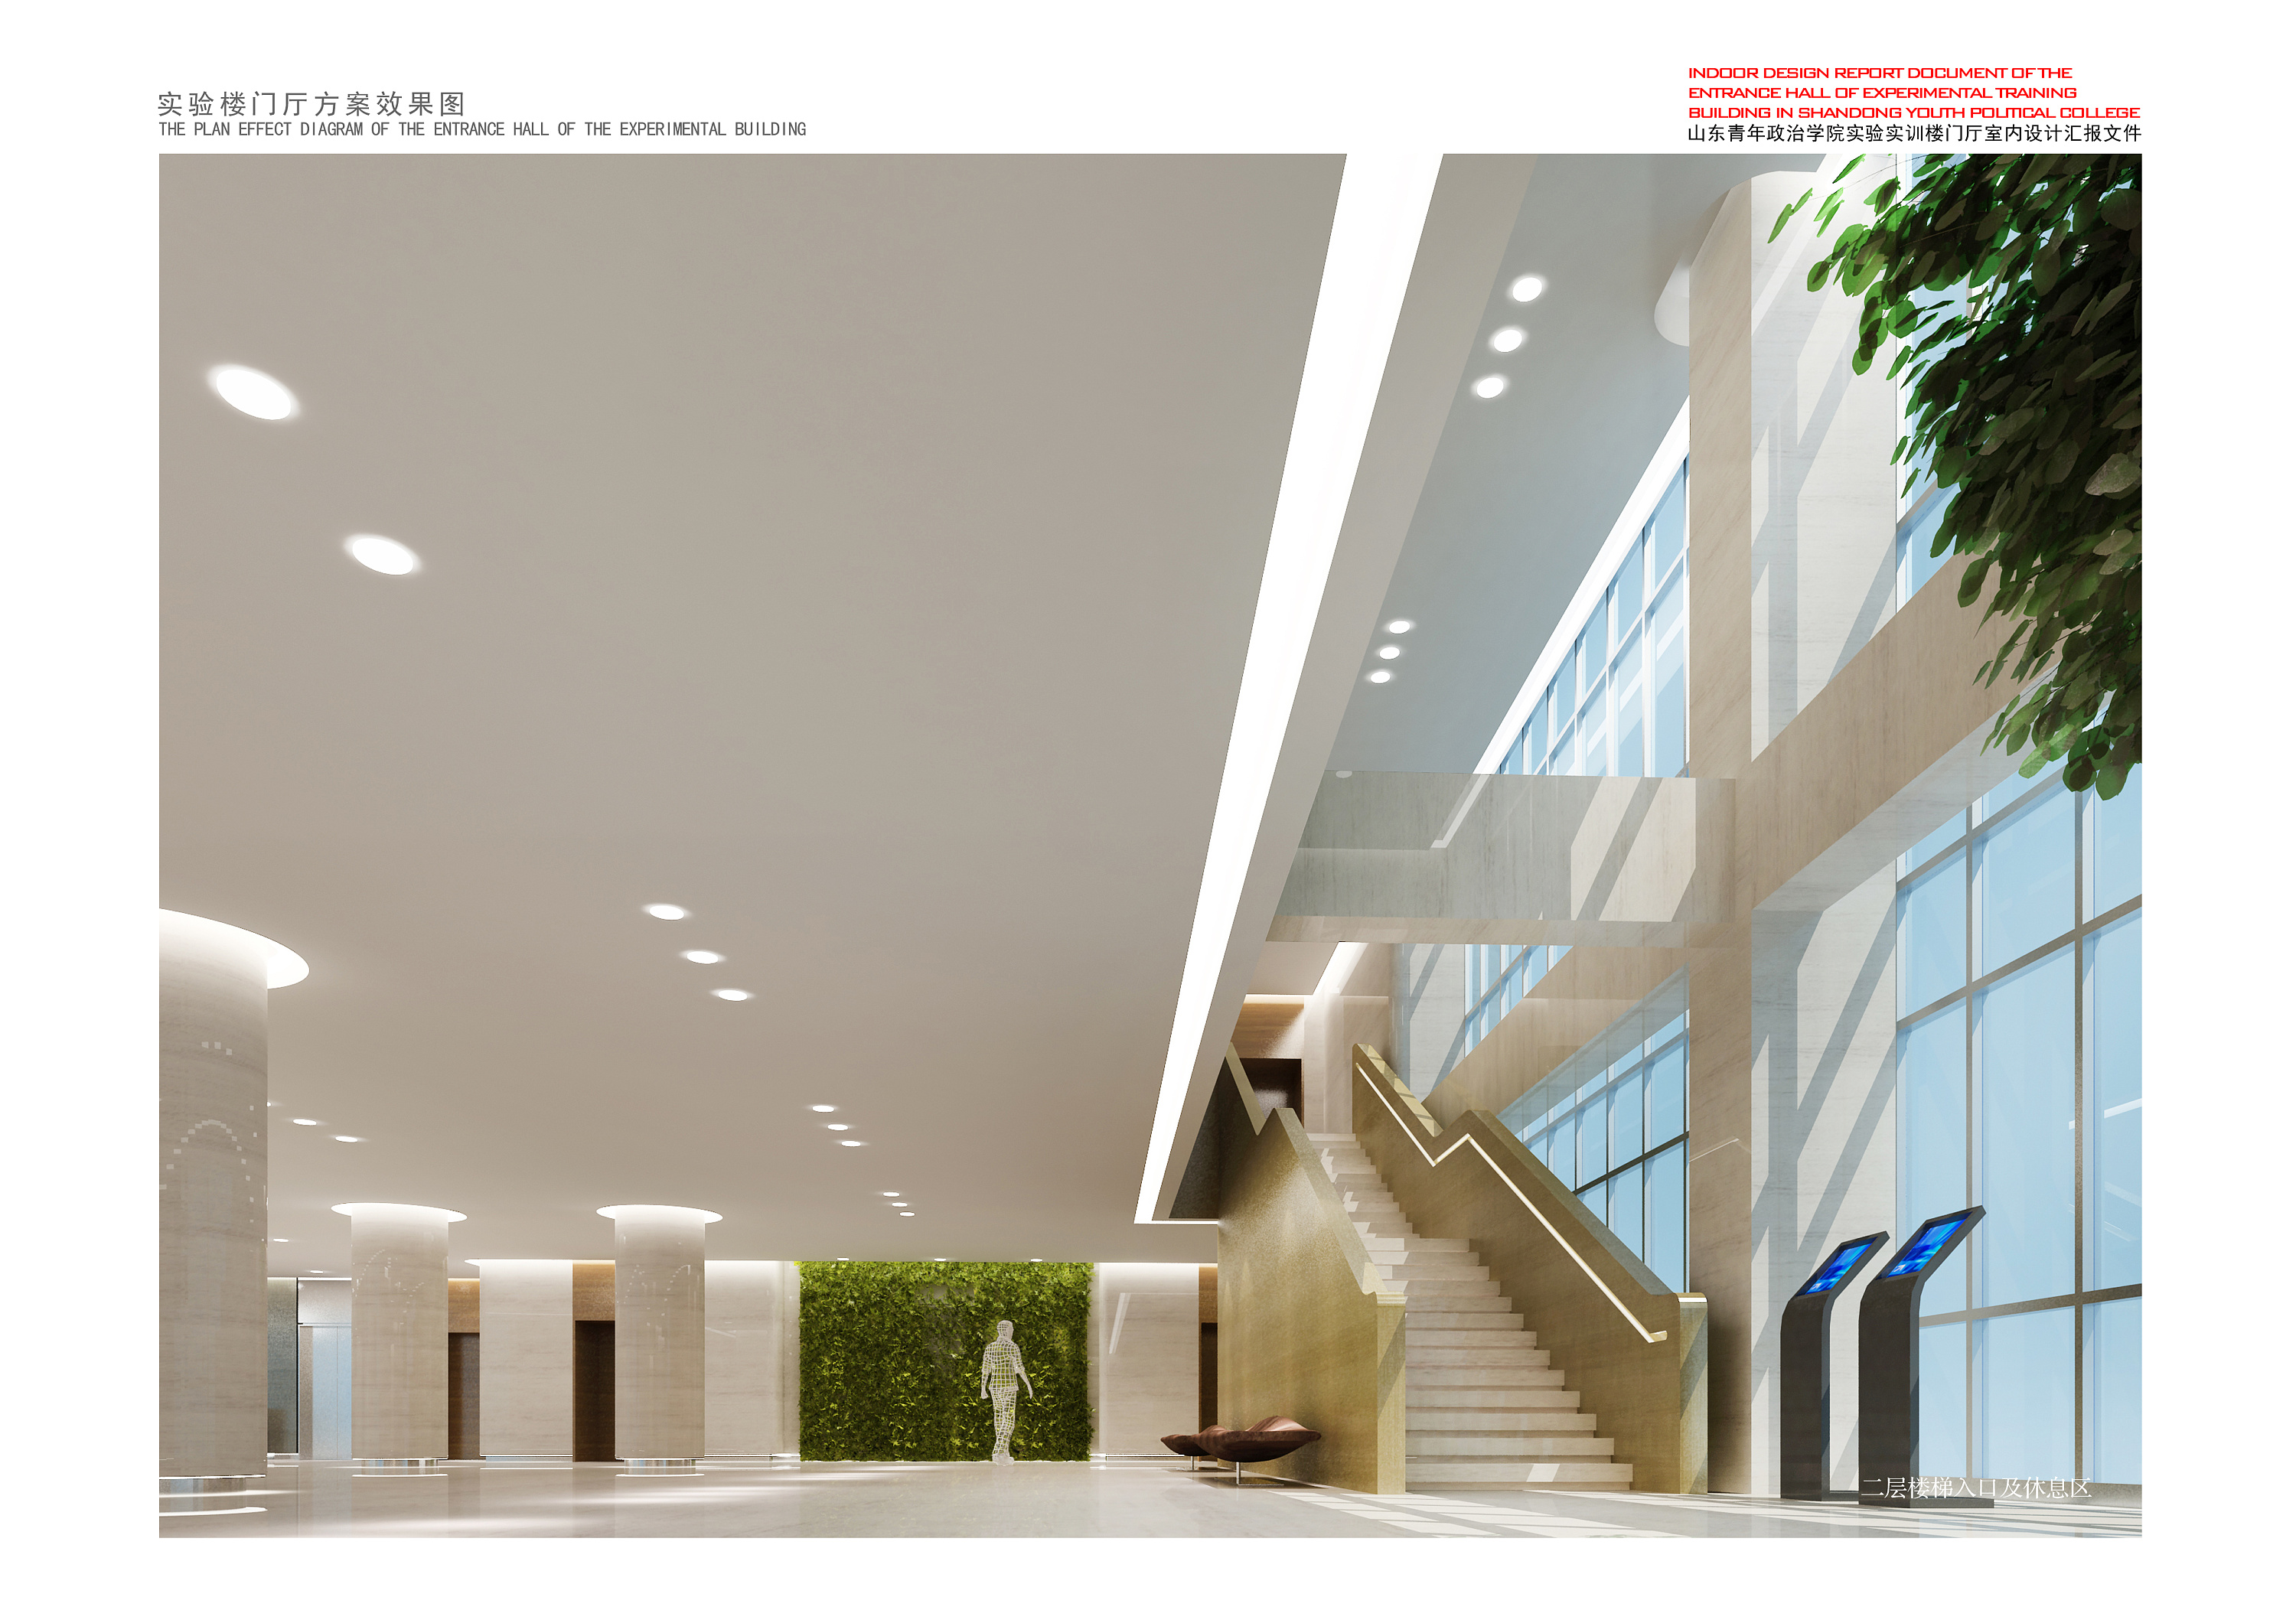 清华大学教学楼室内设计 荣获2020美国IDA国际设计奖金奖-清华大学美术学院